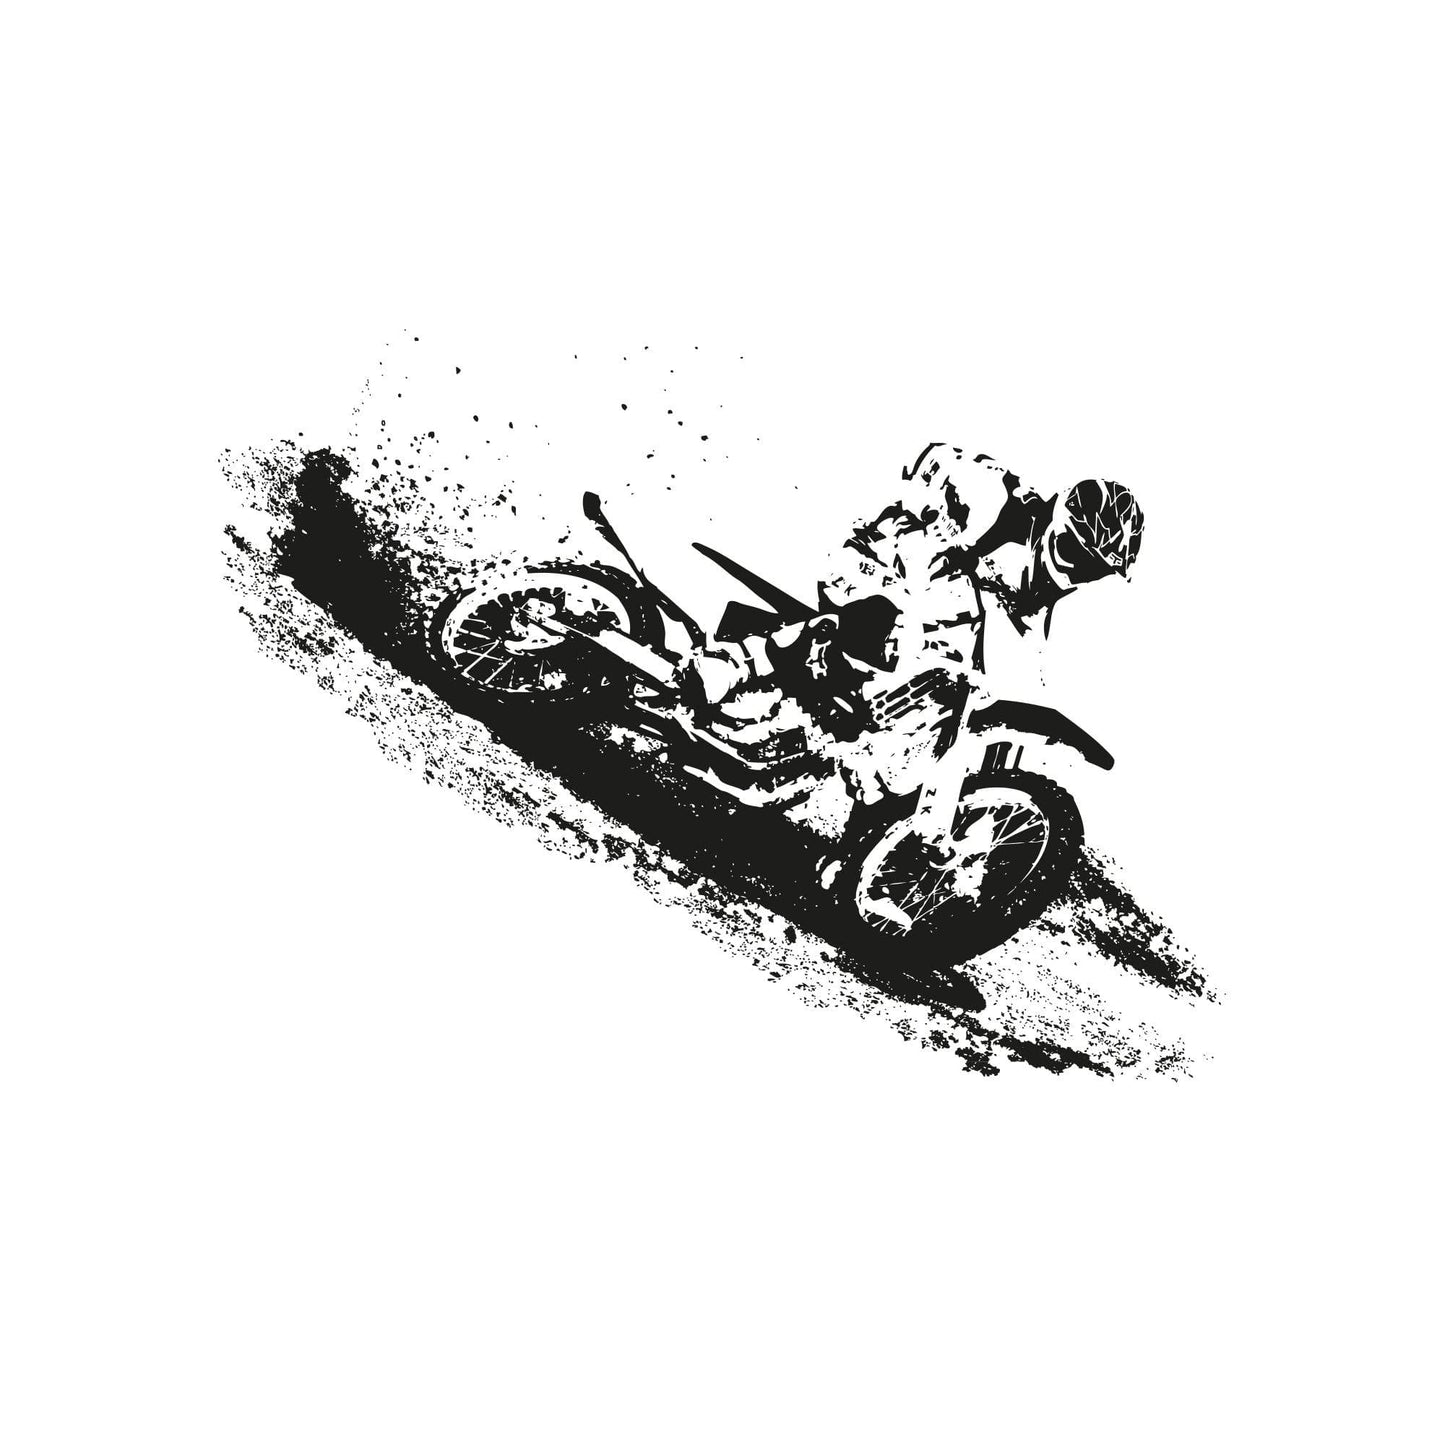 Dirt Bike Wall Decal. Motocross Rider Sticker. #OS_AA197